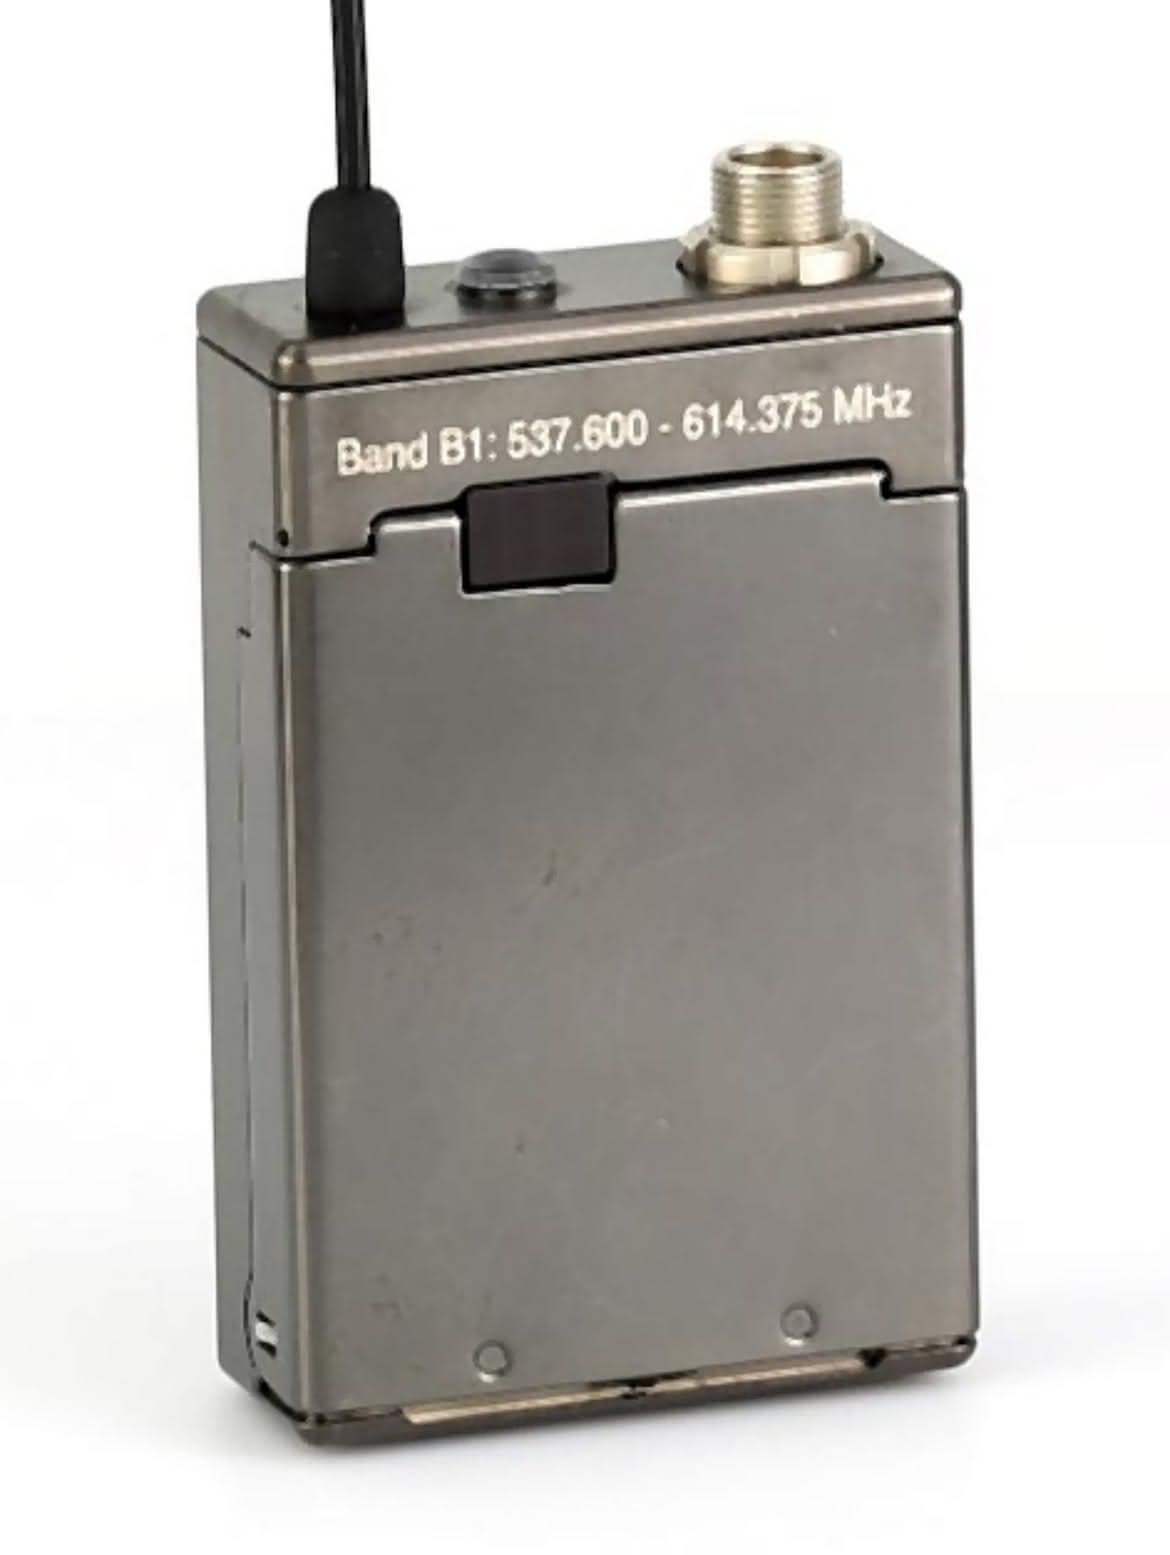 Lectrosonic SSM - Mikronadajnik systemu bezprzewodowego